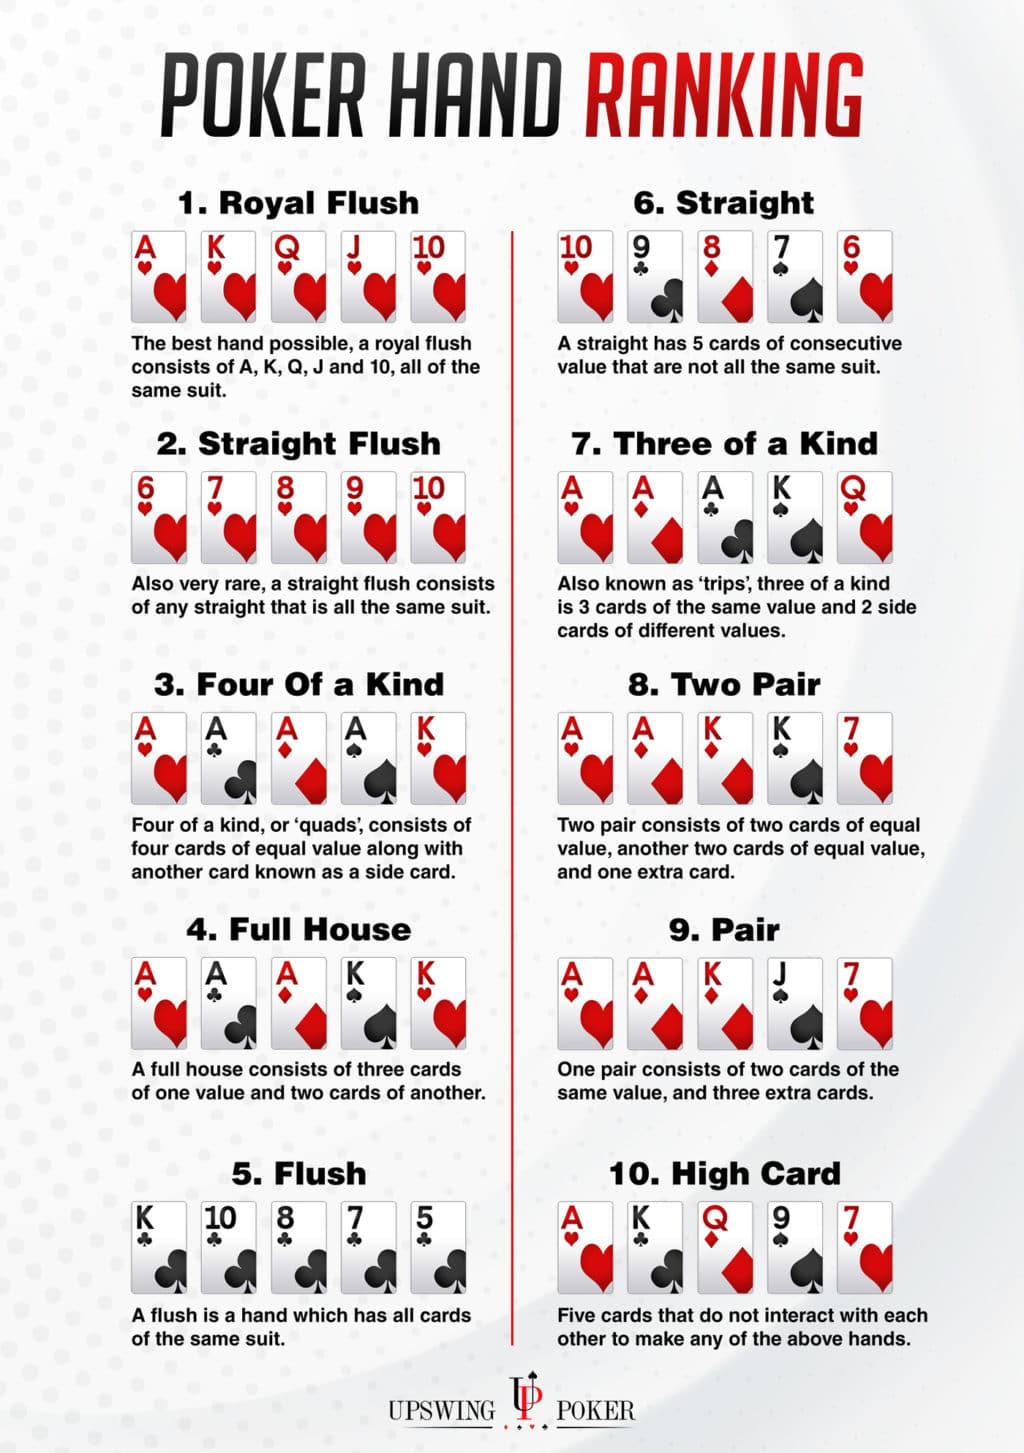 Top ten poker hands